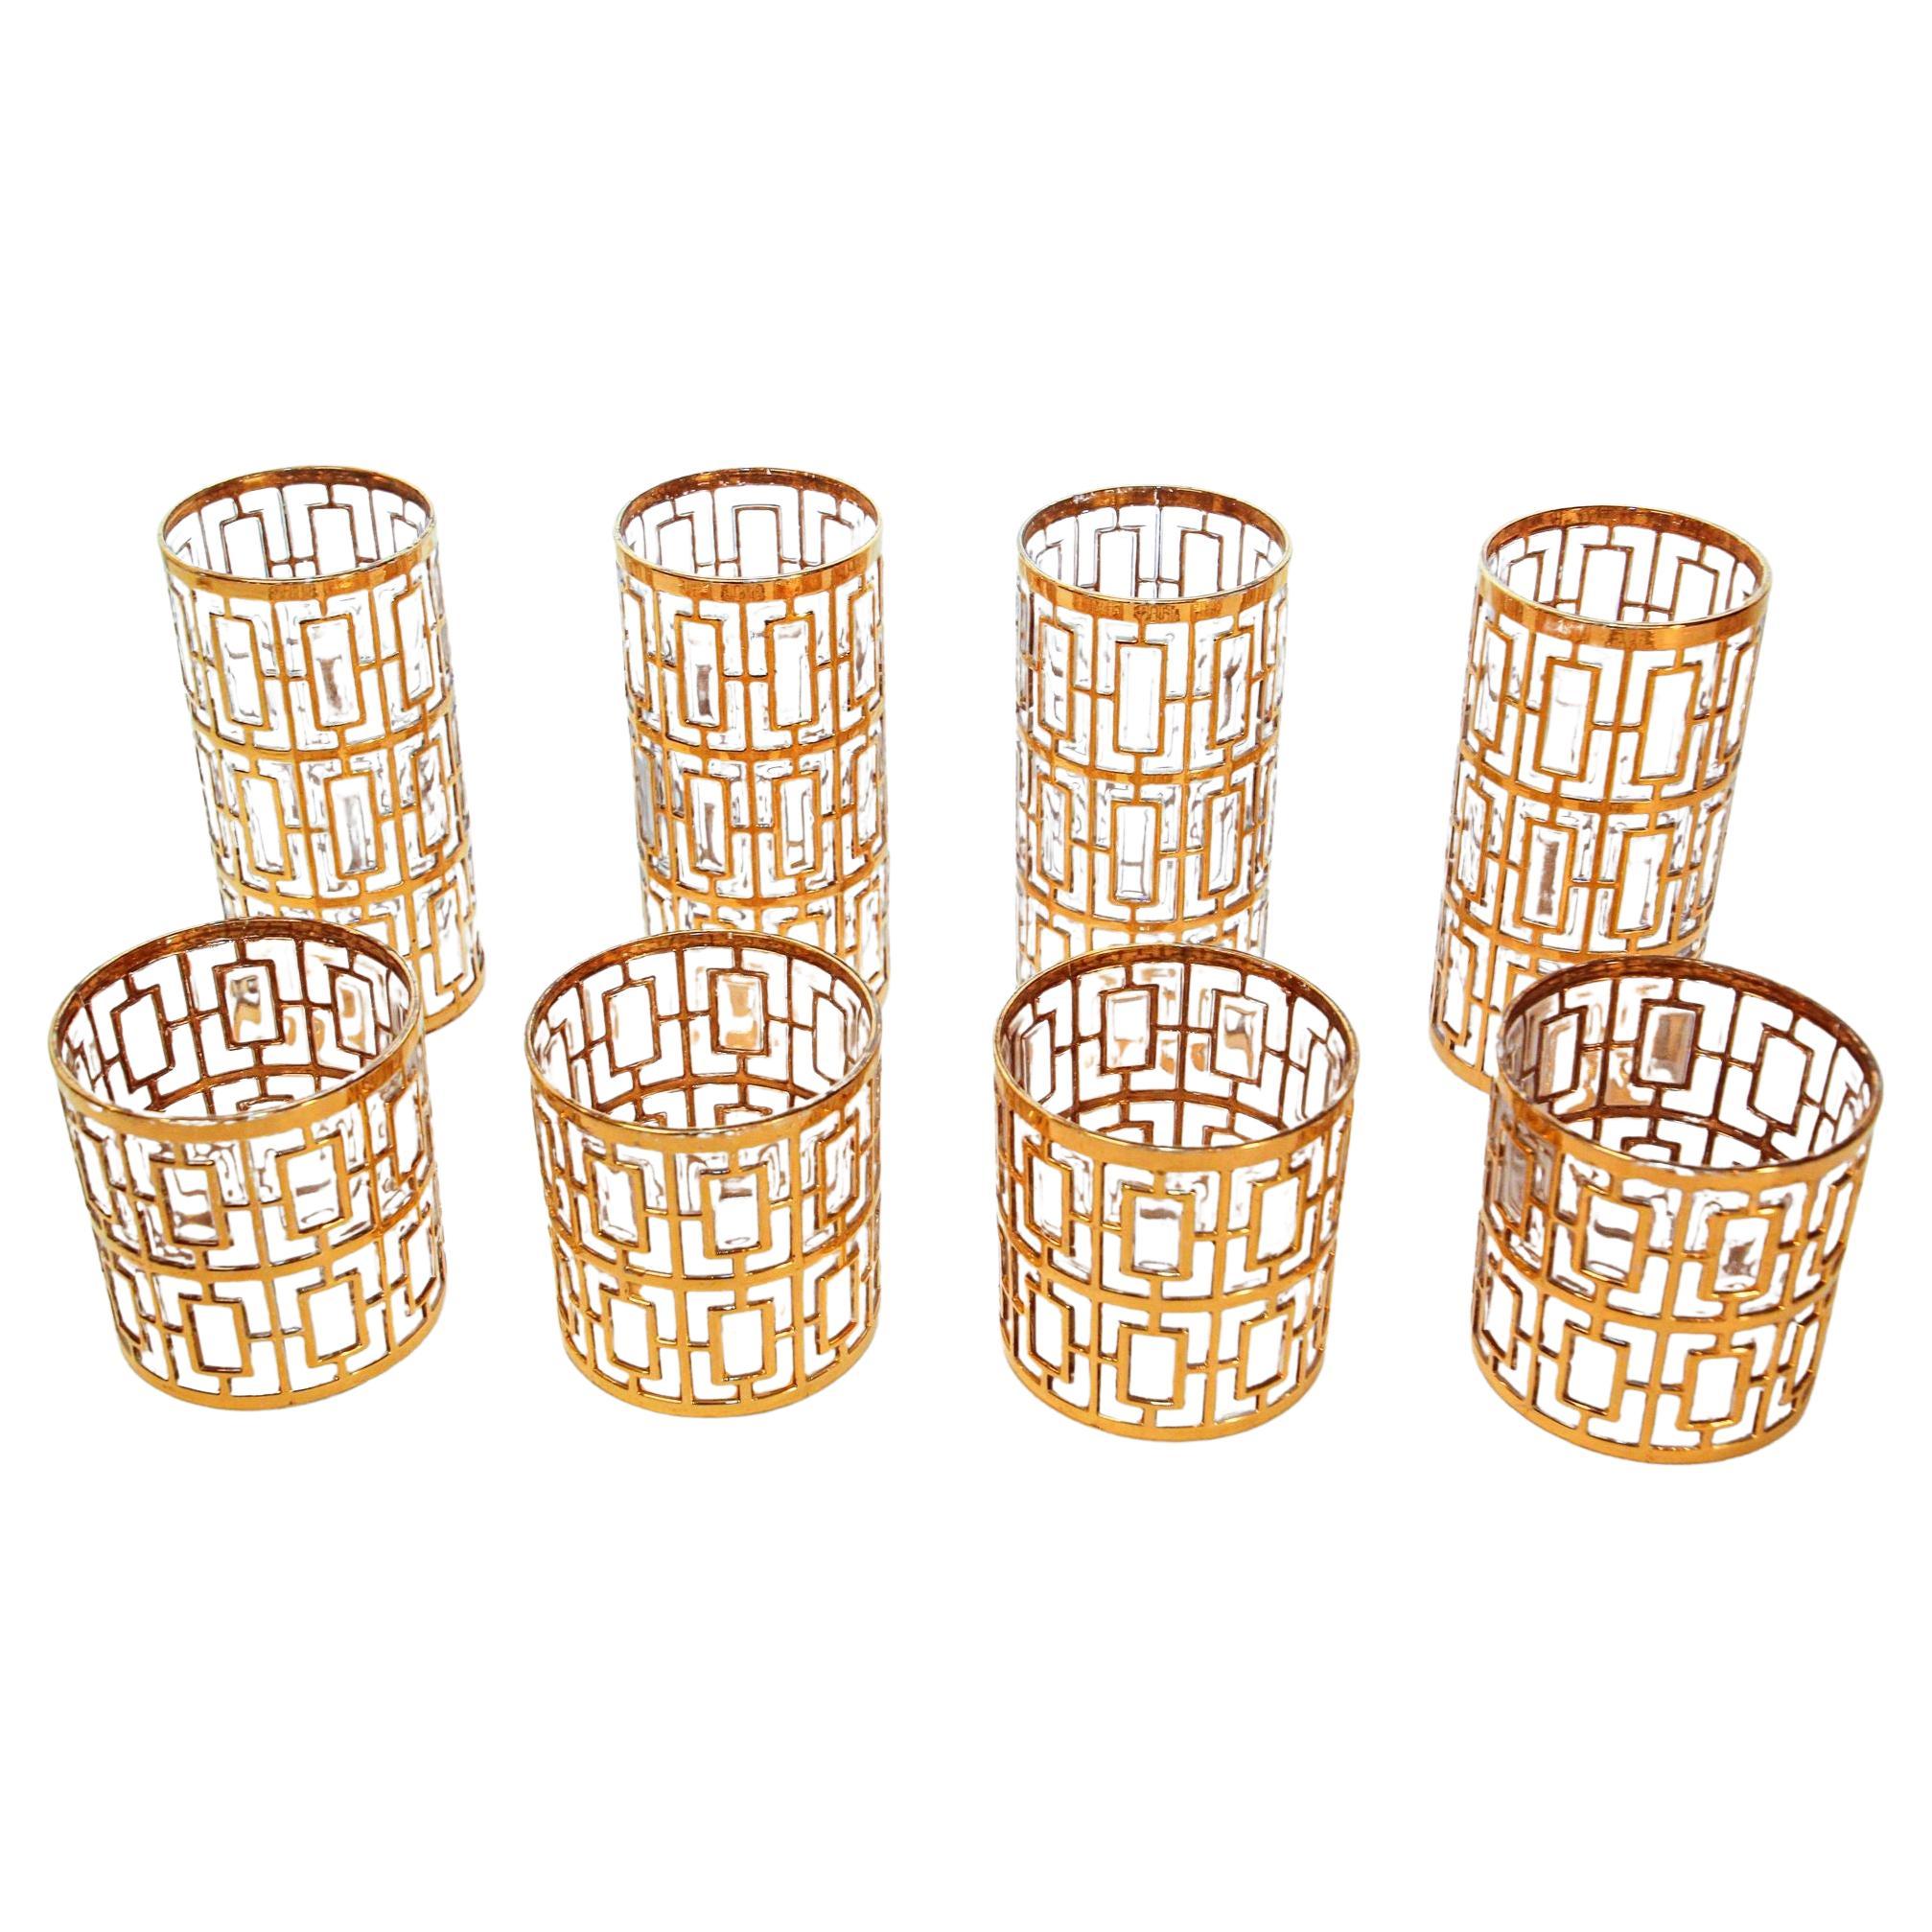 Verres à cocktail Shoji dorés impériaux des années 1960, ensemble de 8 pièces de bar de collection